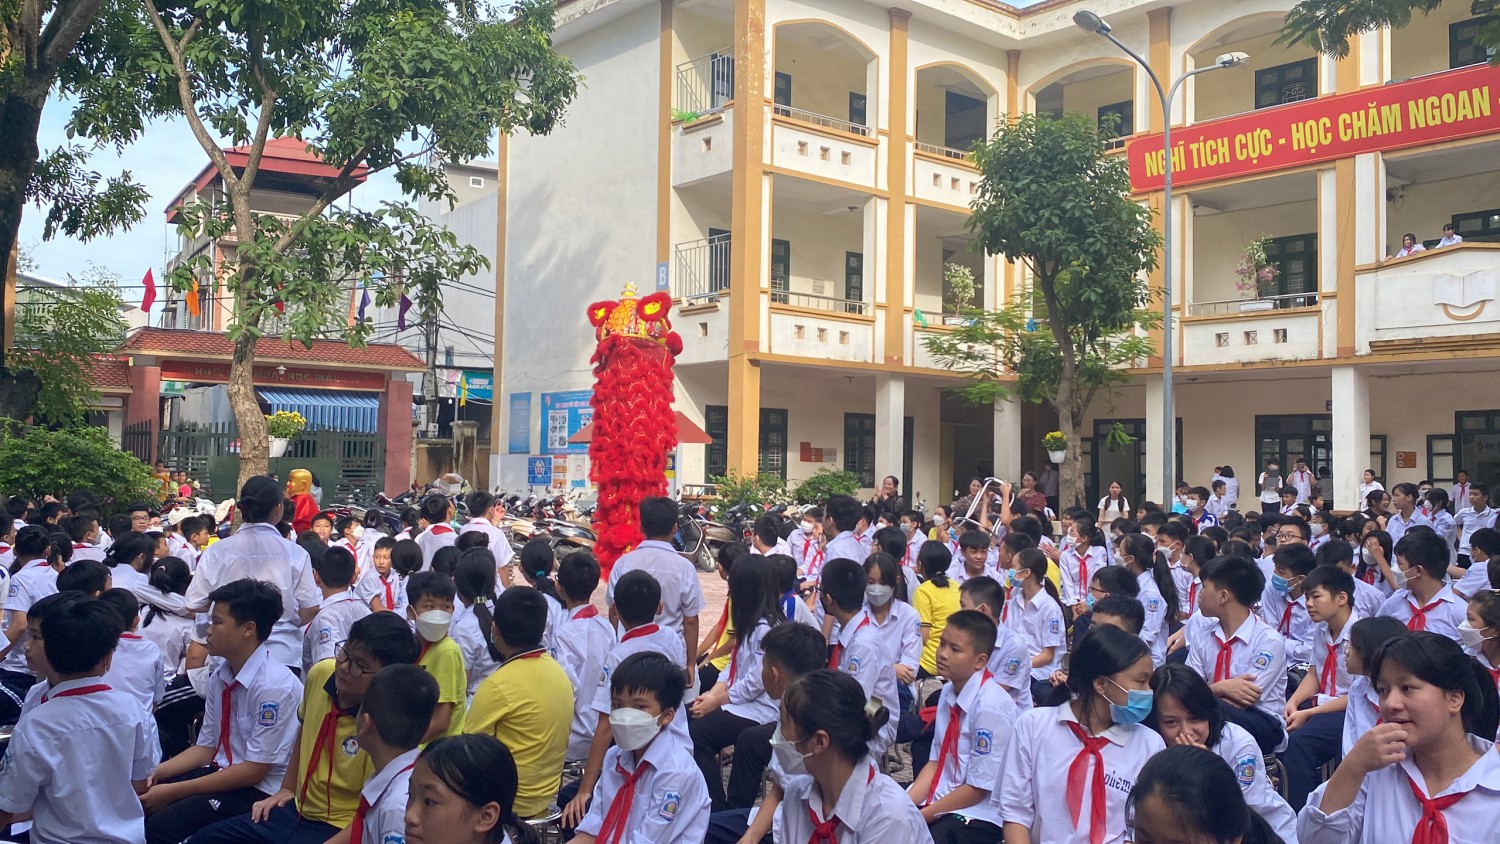 " Vui hội trăng rằm " của THCS Dương Nội thực sự là cơ hội để các em có thêm điều kiện cùng nhau tìm hiểu truyền thống dân tộc.